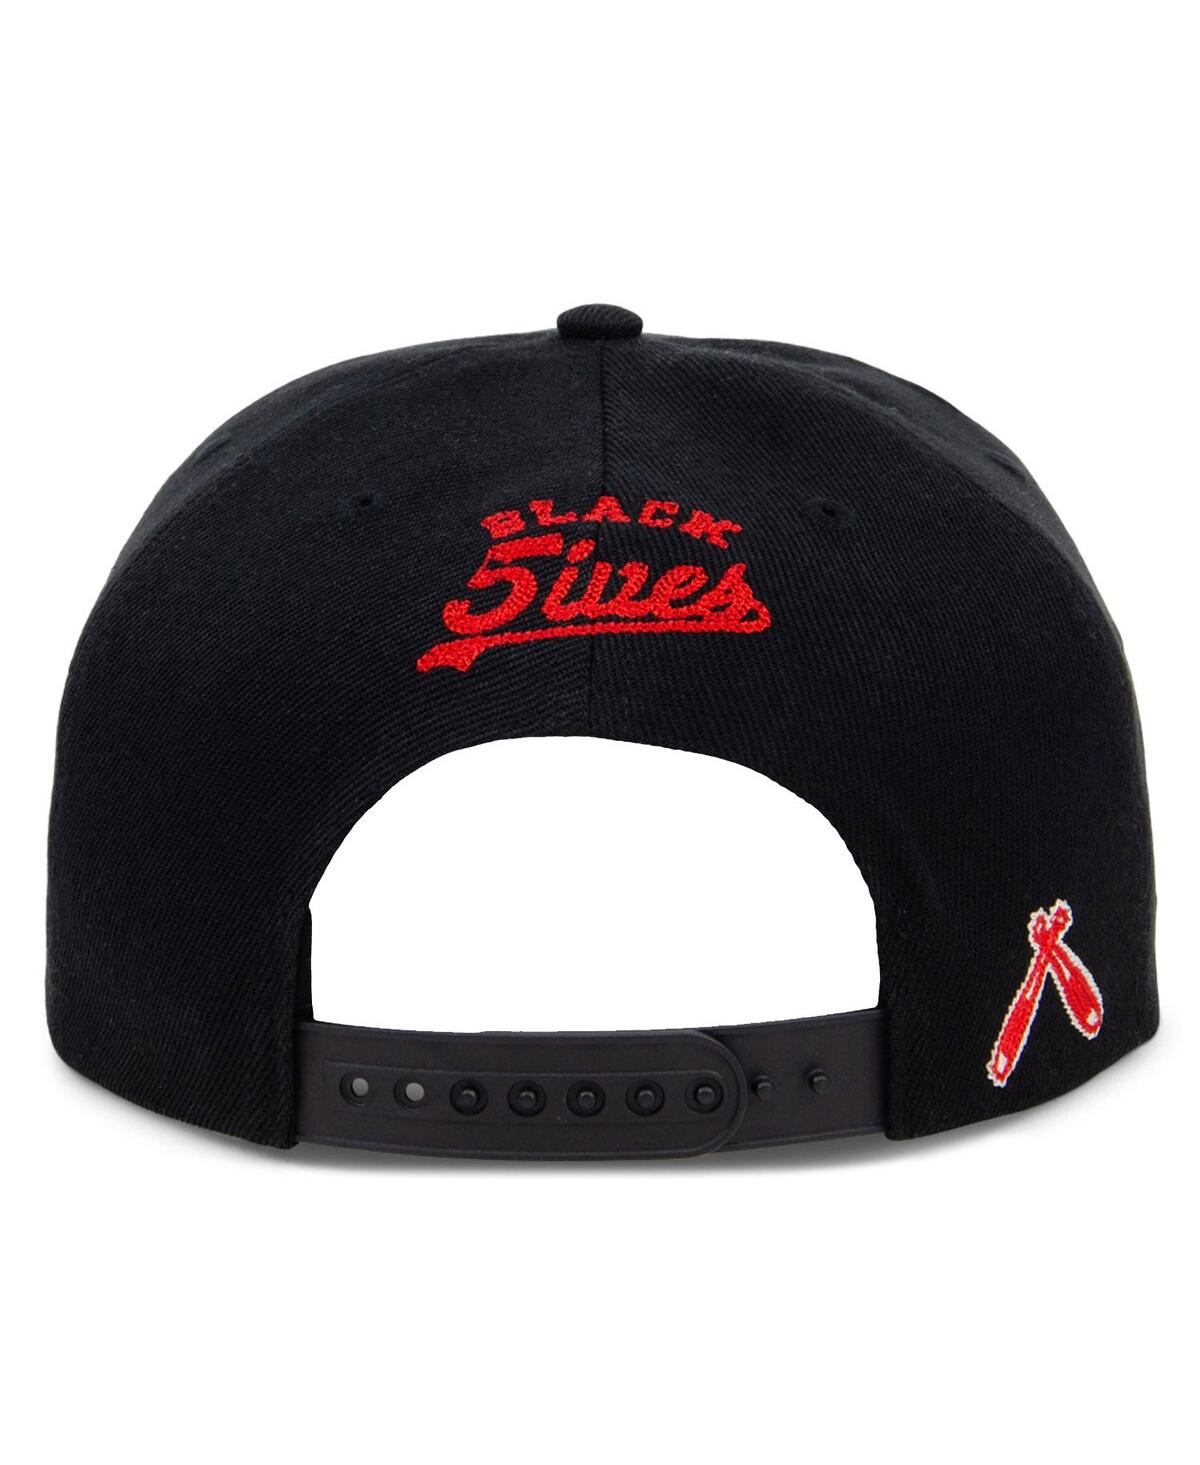 Shop Physical Culture Men's  Black 12 Streeters Black Fives Snapback Adjustable Hat